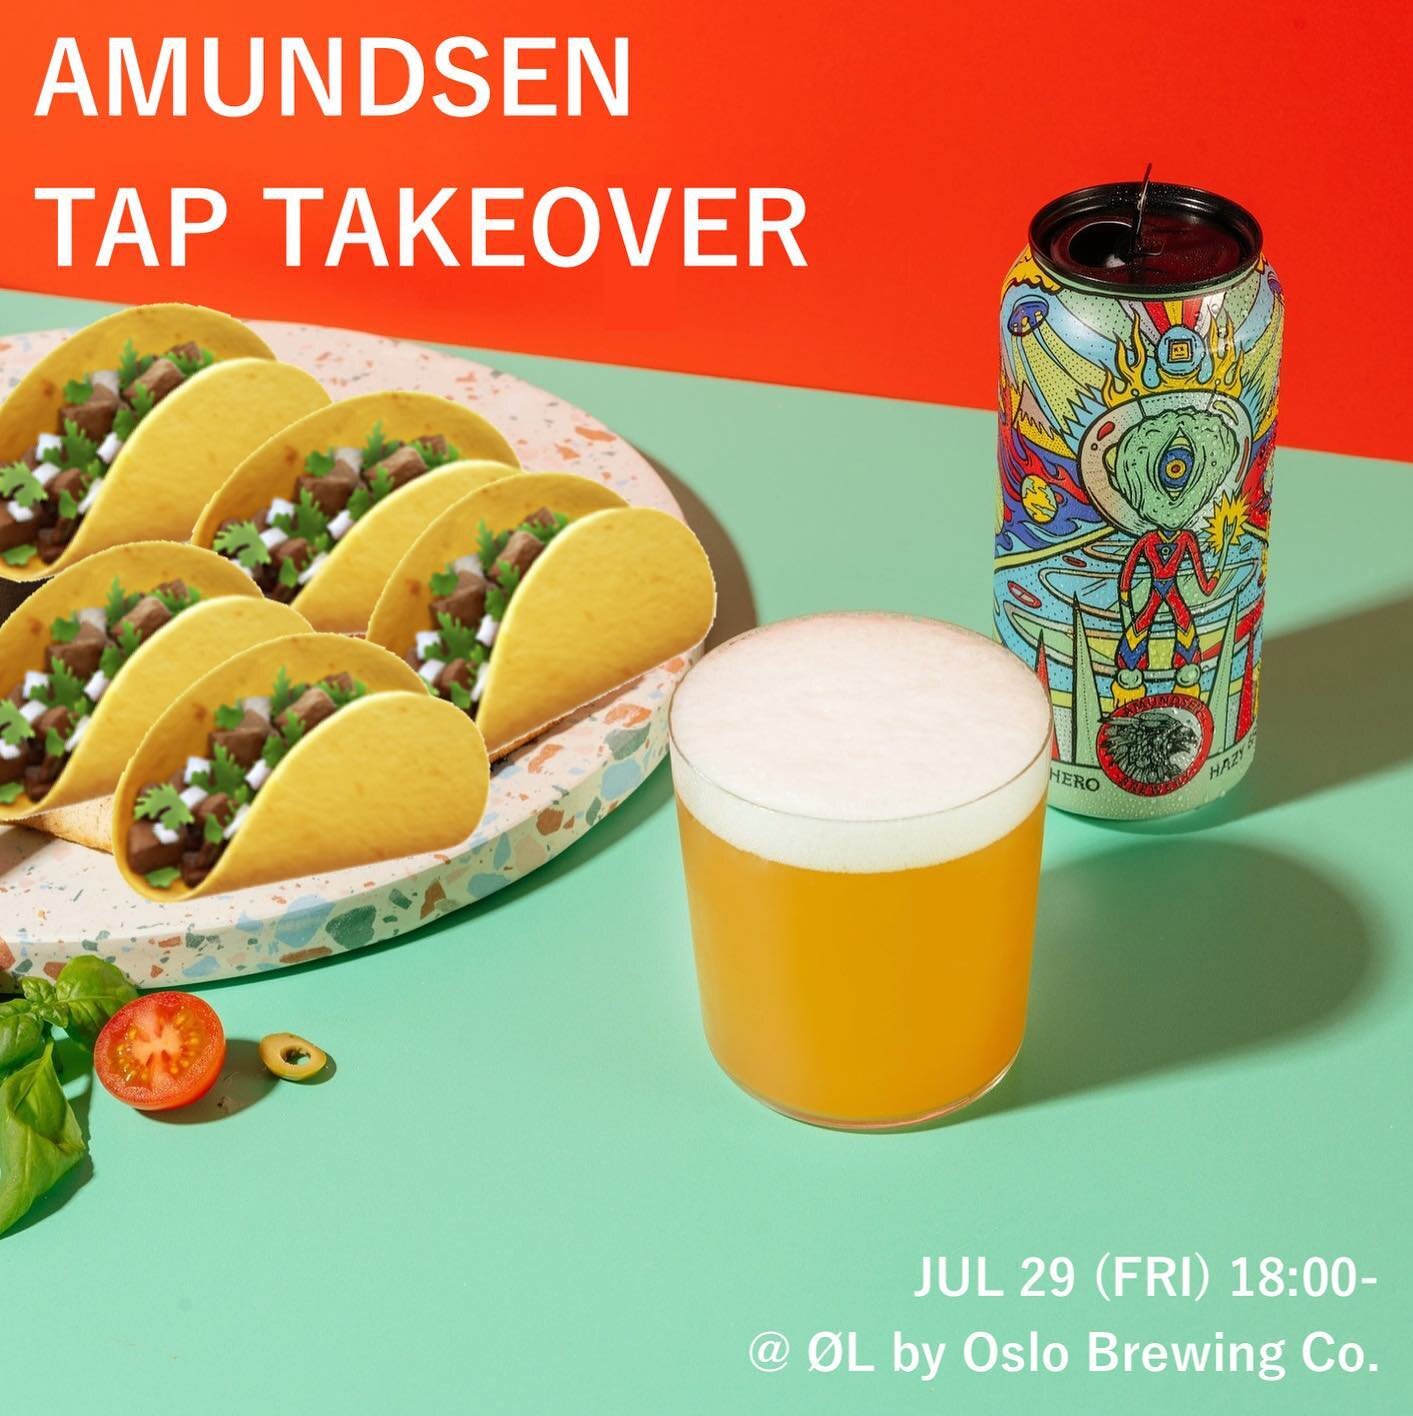 &hellip;

&ldquo;Amundsen Tap Takeover&rdquo;
July 29 (FRI) 18:00-
@amundsenbrewery 

自社のビール以外では久しぶりの、ノルウェーのブルワリー、AmundsenのTap Takeover開催のお知らせです🇳🇴

今回は10液種。
IPAを中心にSour (Berliner Weisse)からStoutまで色々ご用意致しましたので、この機会にぜひ！

そしてタコスとのペアリングもお忘れなく🌮

世界的にはTa